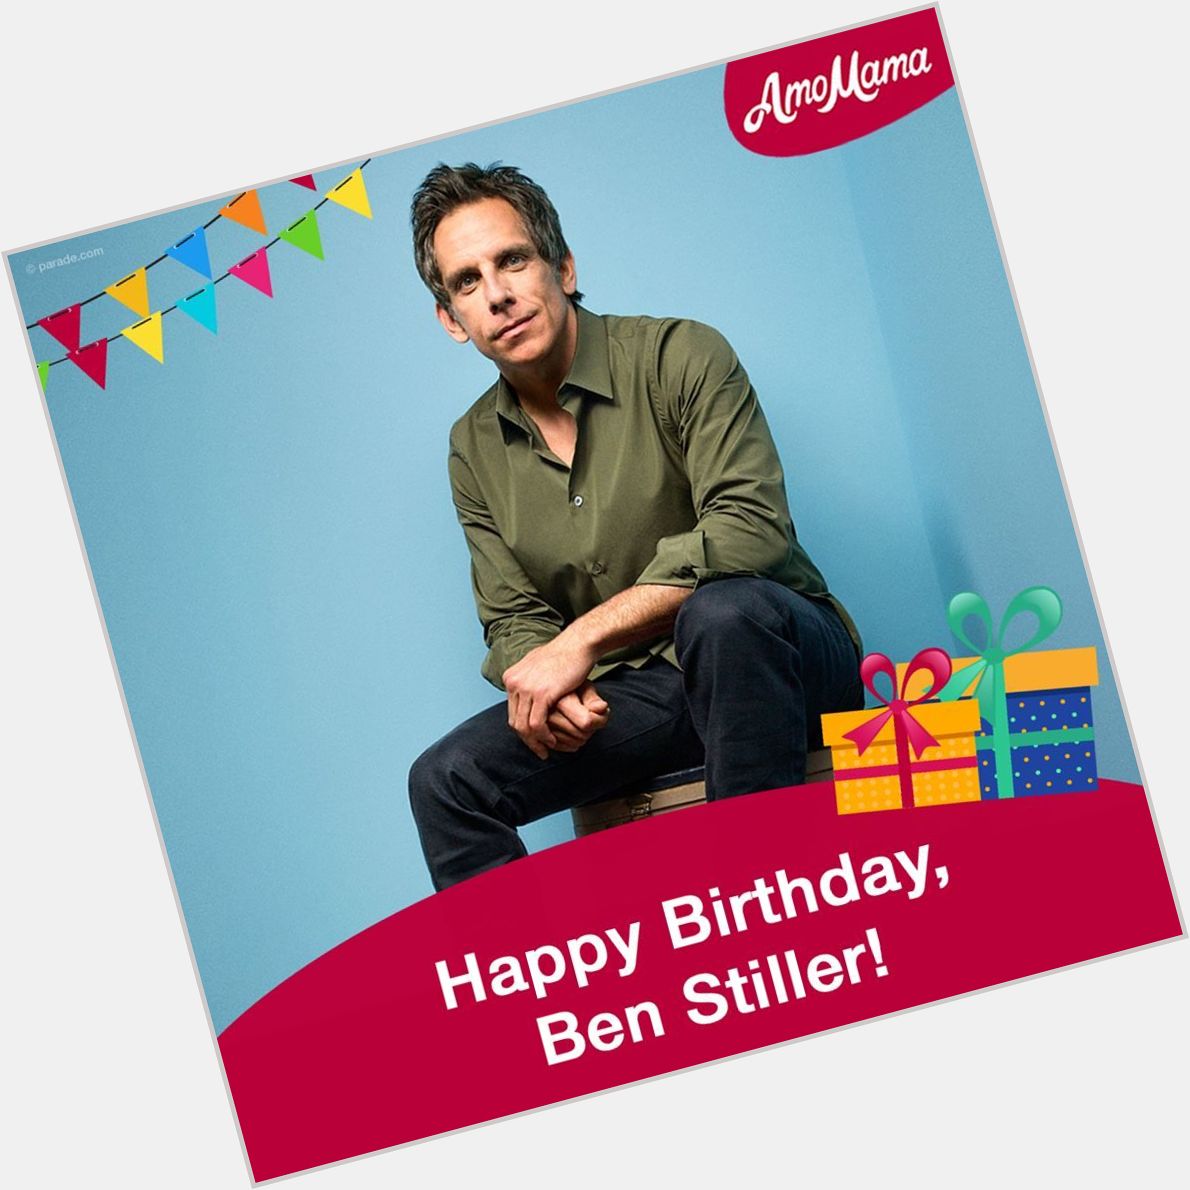  Let\s wish Ben Stiller a happy 53rd birthday!  